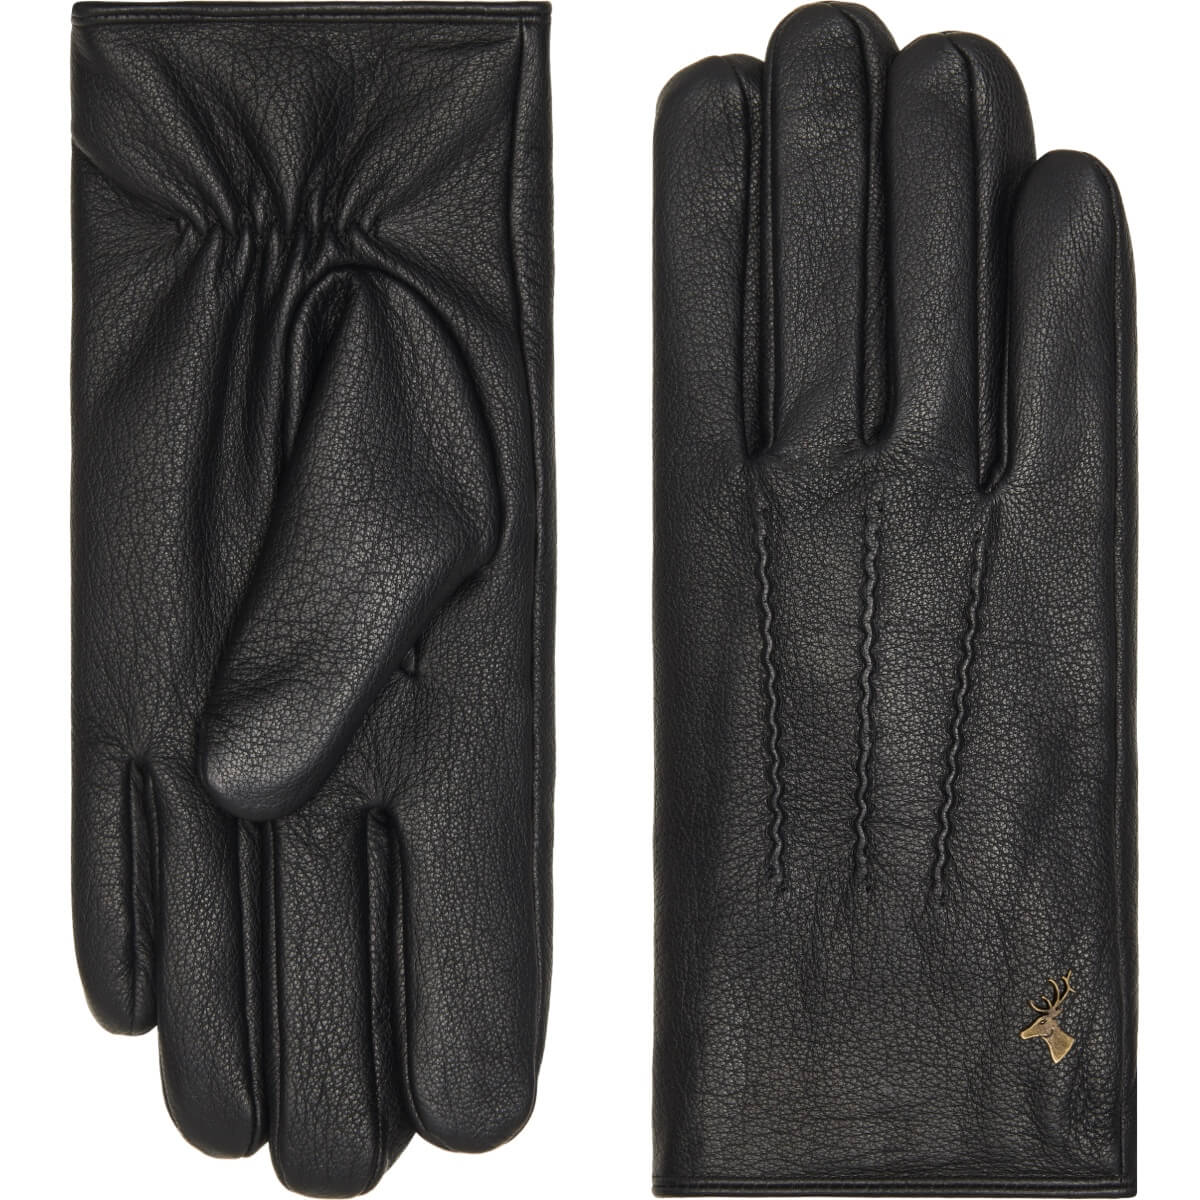 Black Leather Gloves Men Jaxon - Schwartz & von Halen® - Premium Leather Gloves - 2